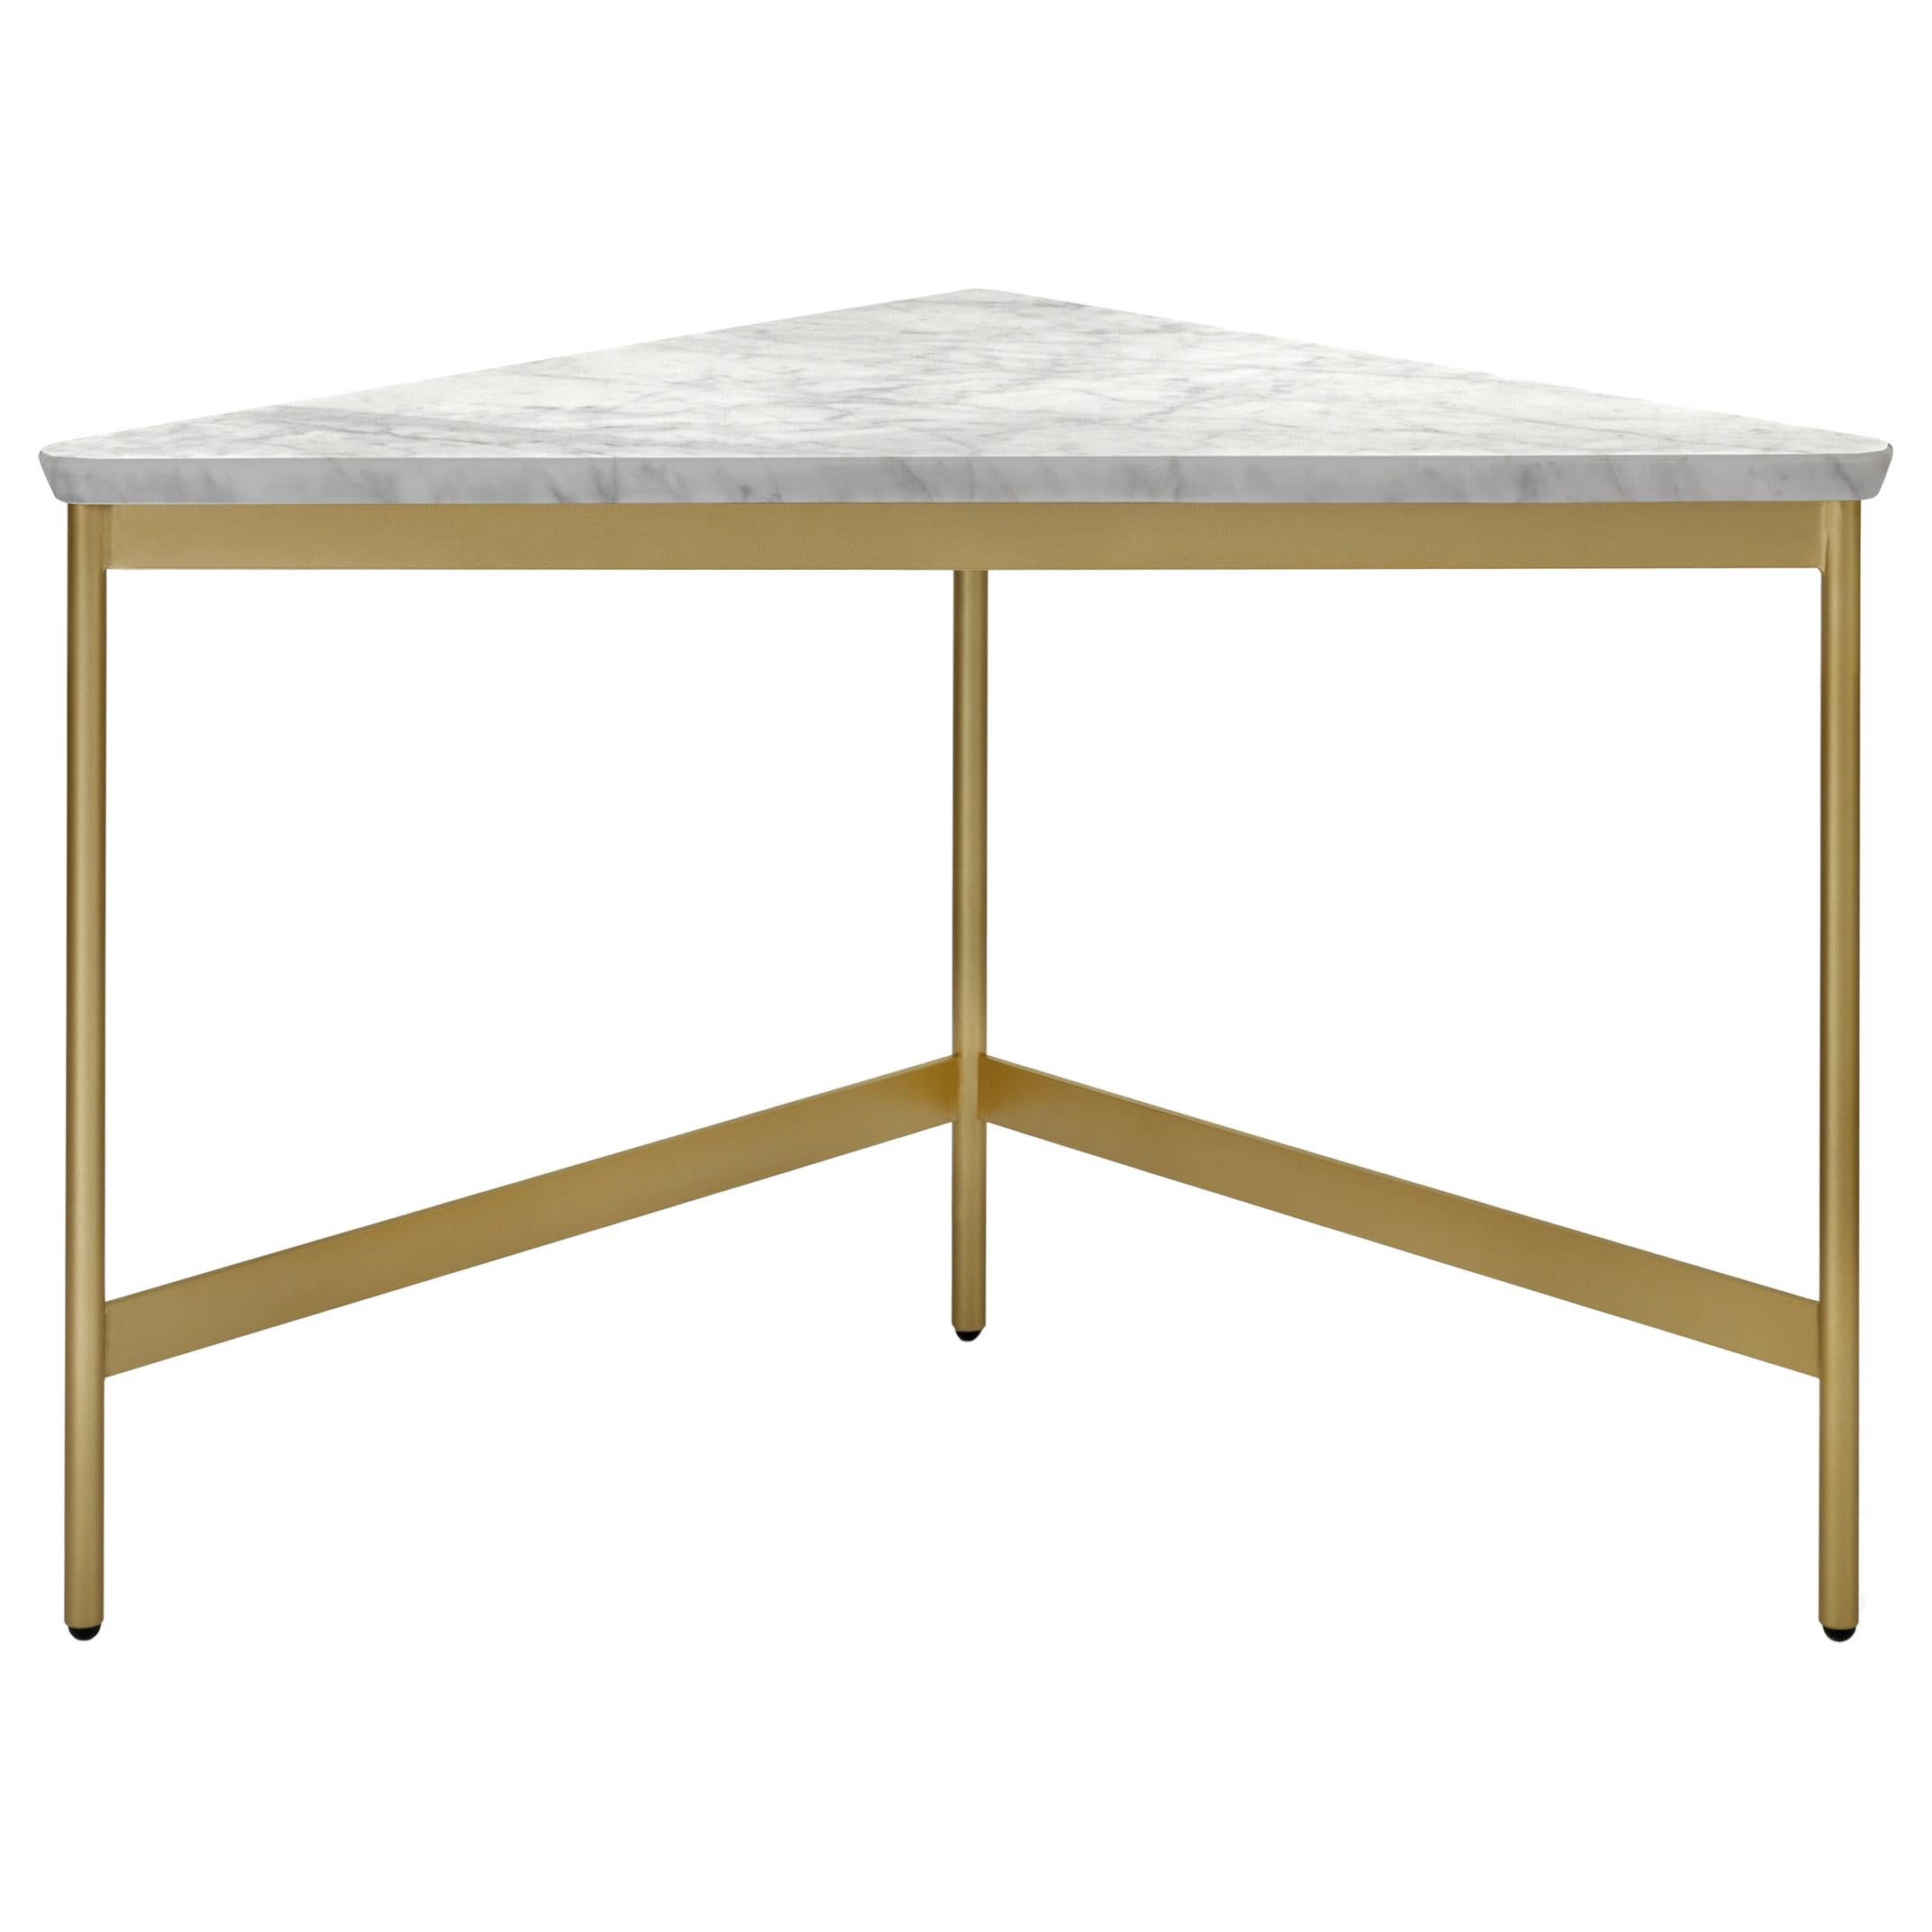 Petite table Capilano d'Arflex de 55 cm avec plateau en marbre de Carrare blanc par Luca Nichetto